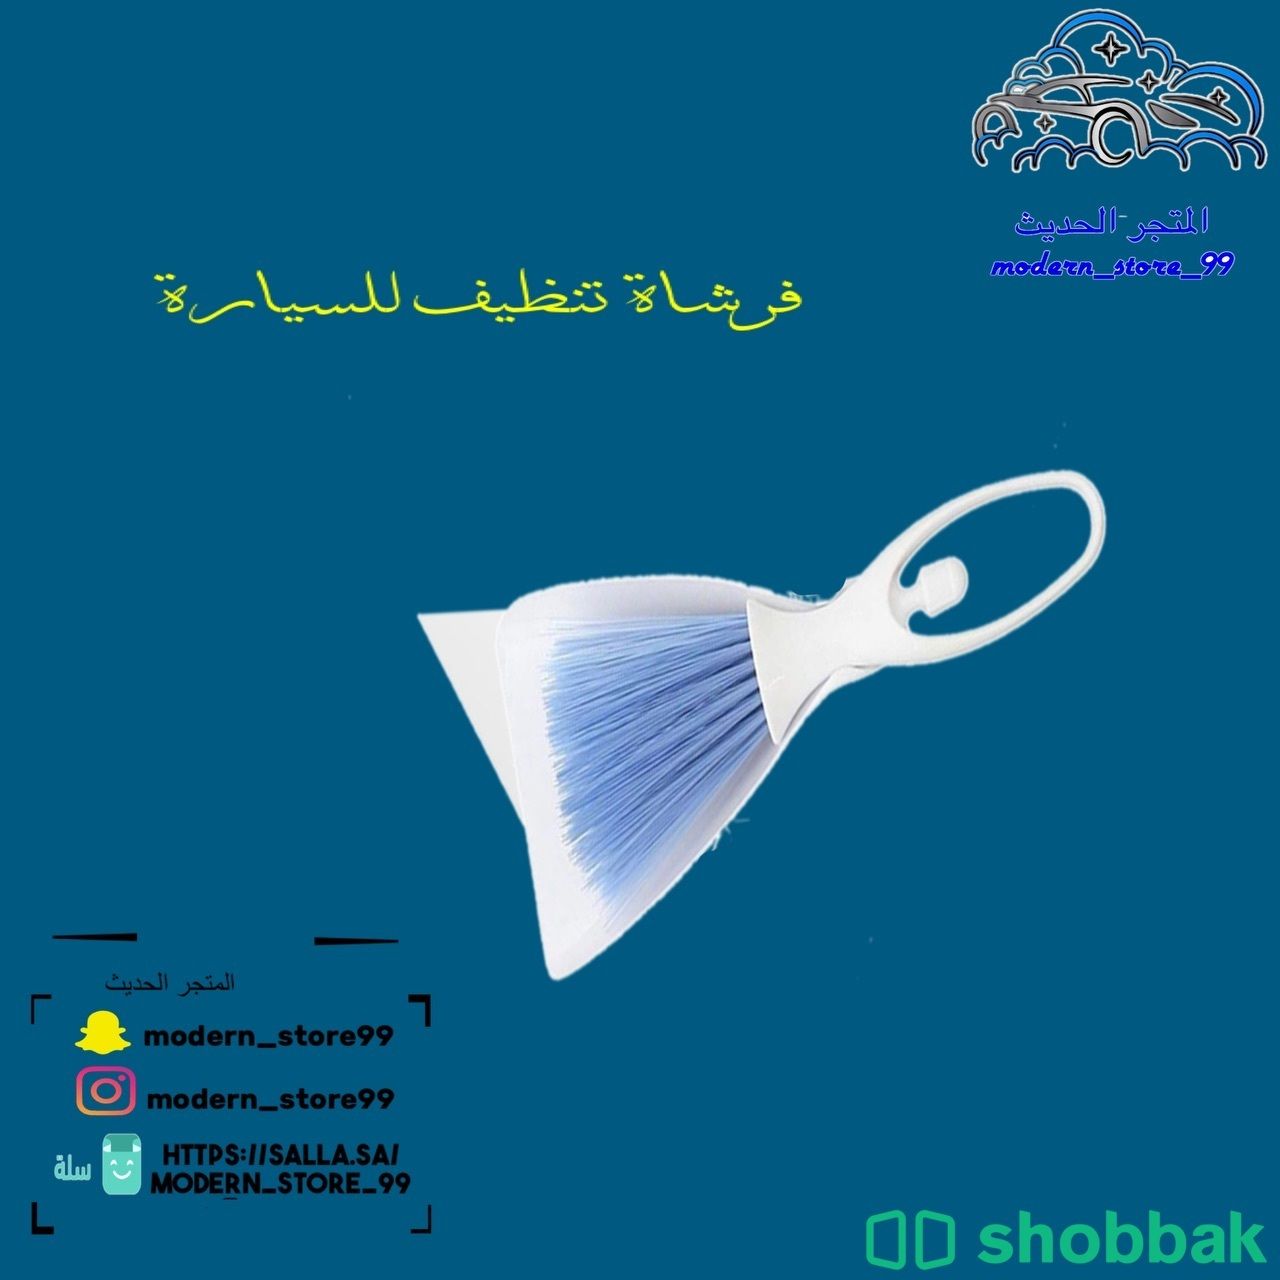 فرشة لتنظيف السياره Shobbak Saudi Arabia